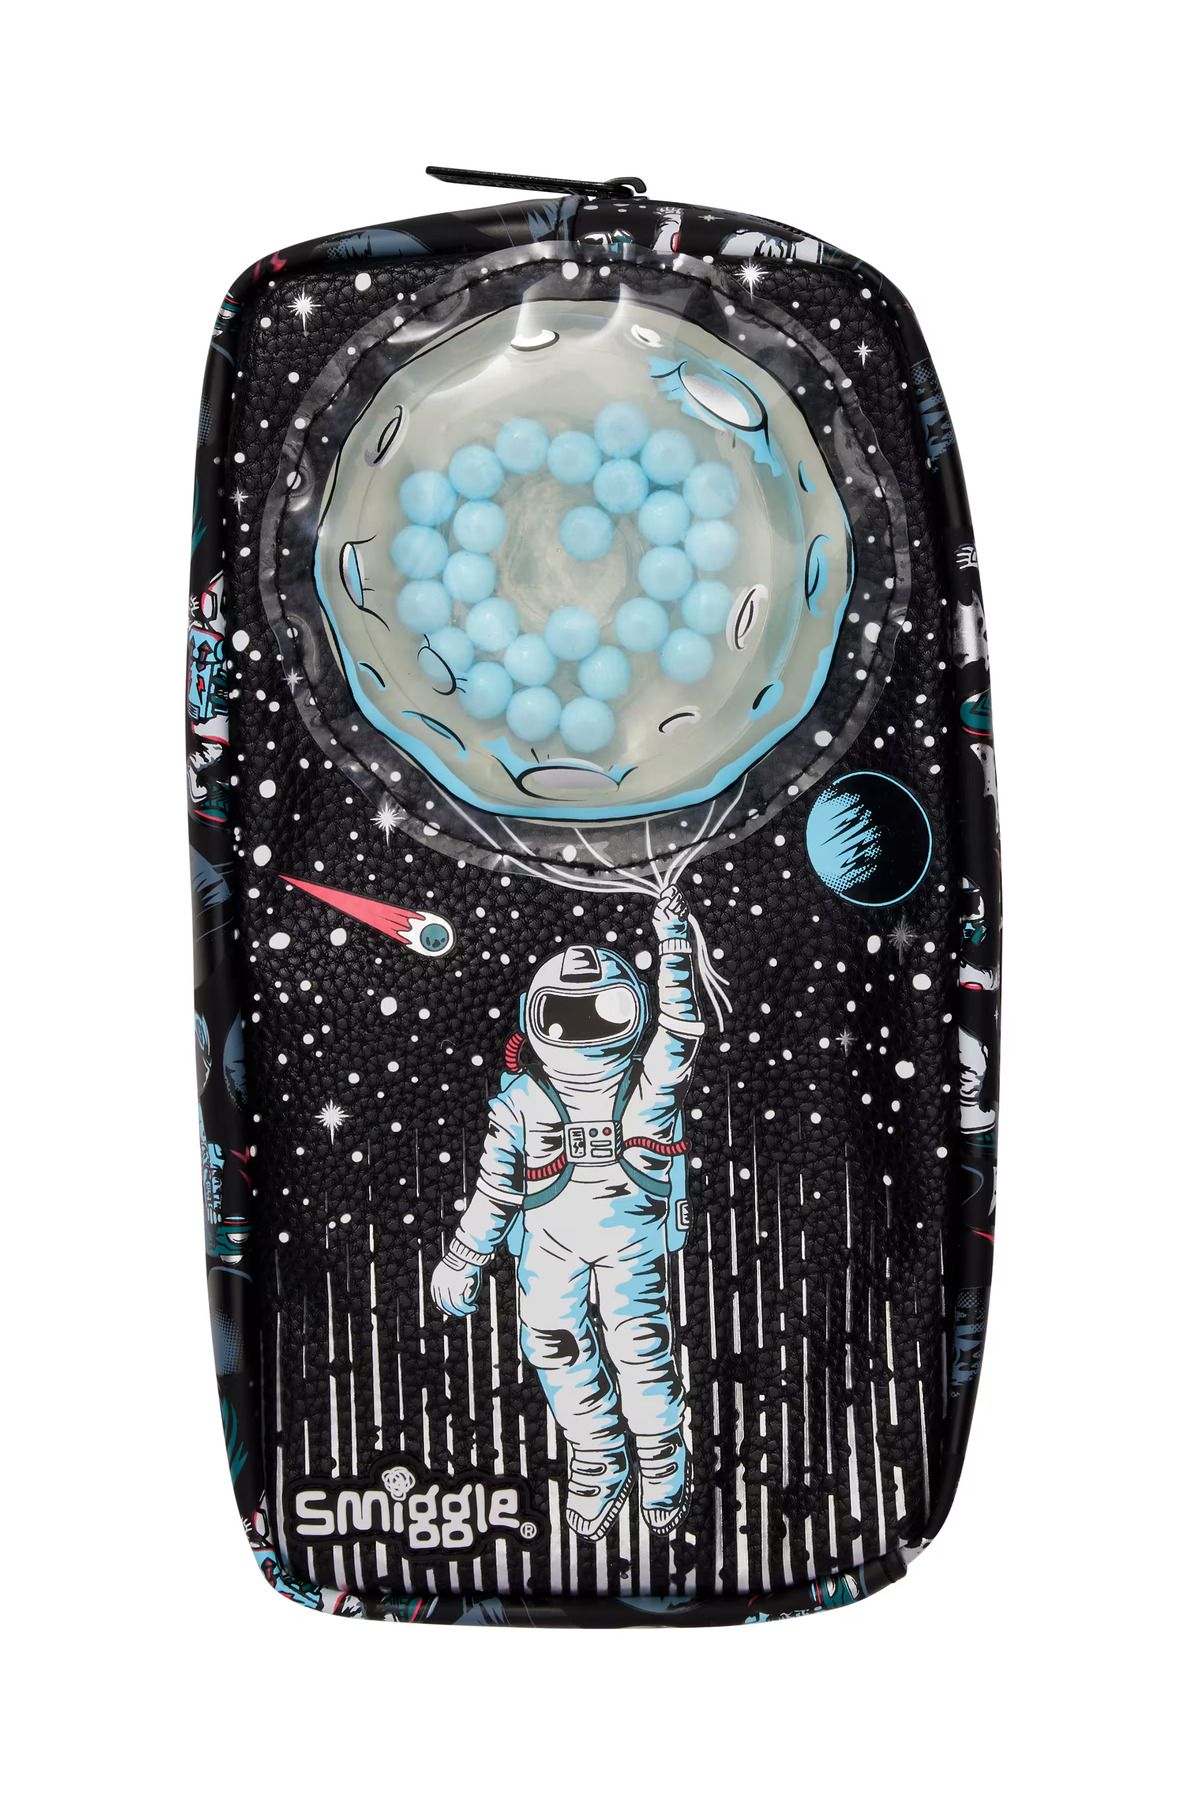 SMIGGLE Astronot Detaylı Içinde Bulunan Jelli Toplarla Oynanabilen Kalem Kutusu